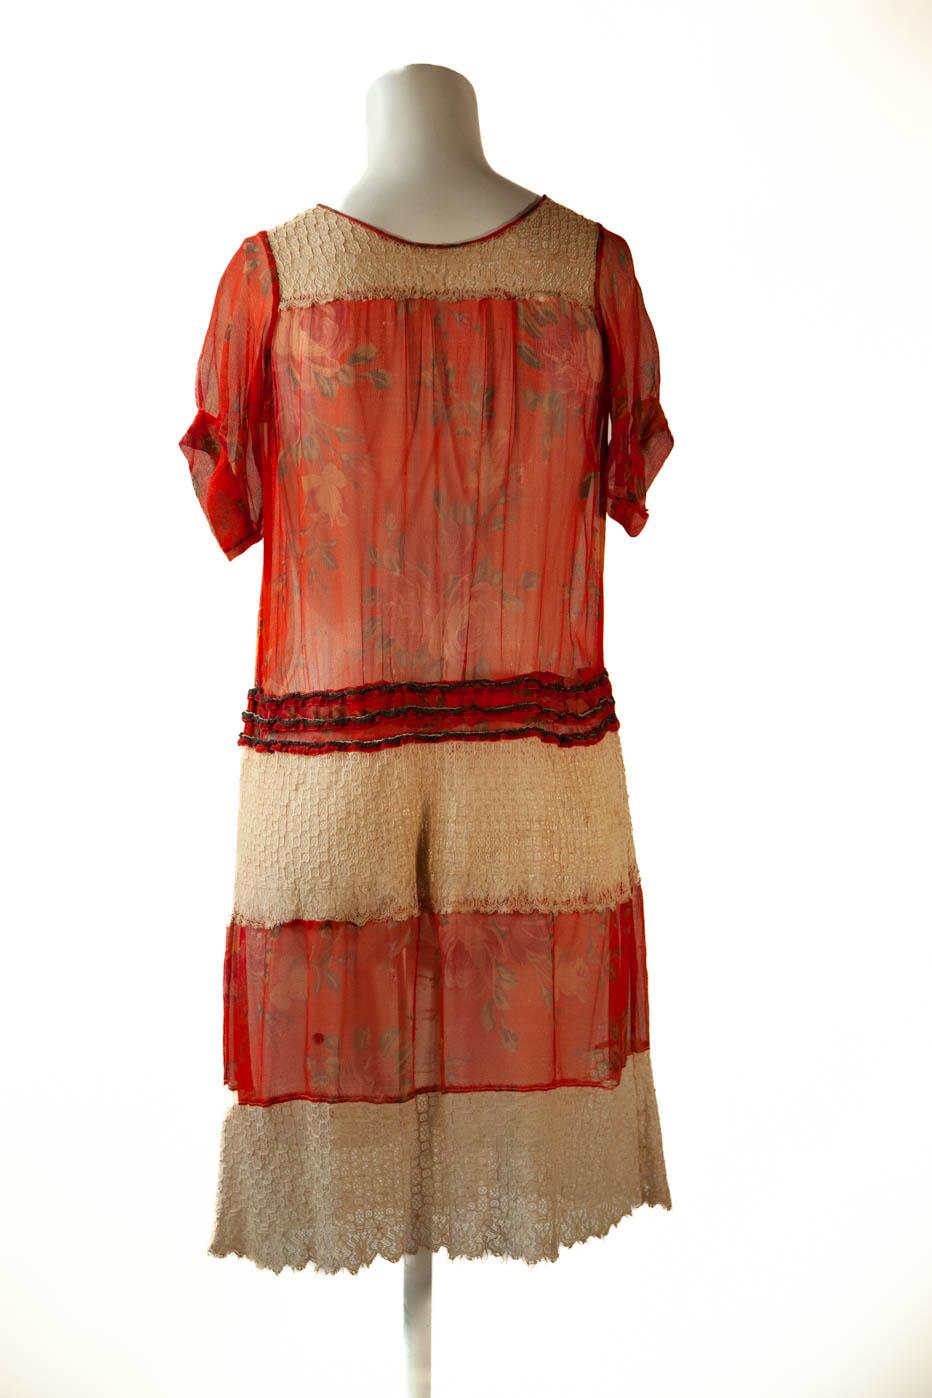 1920 chiffon dress